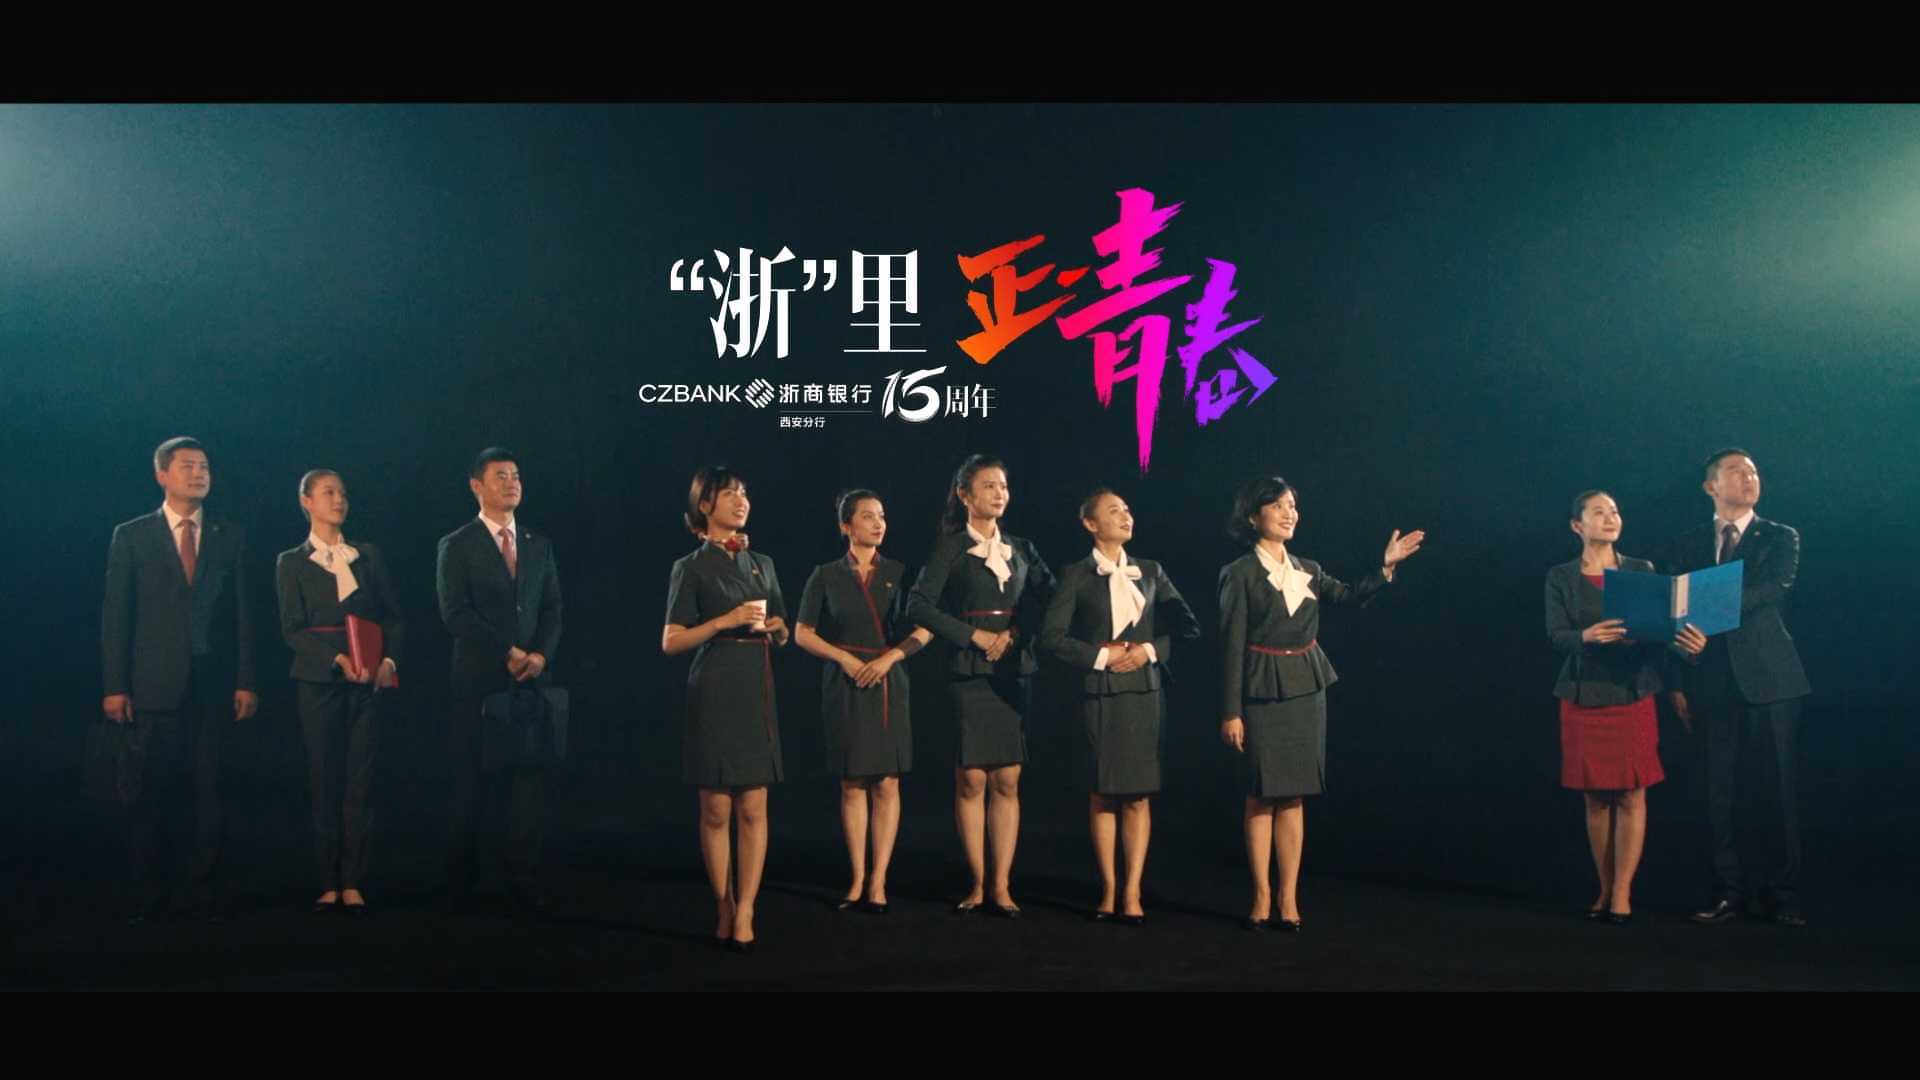 正·青春——浙商银行西安分行15周年宣传片